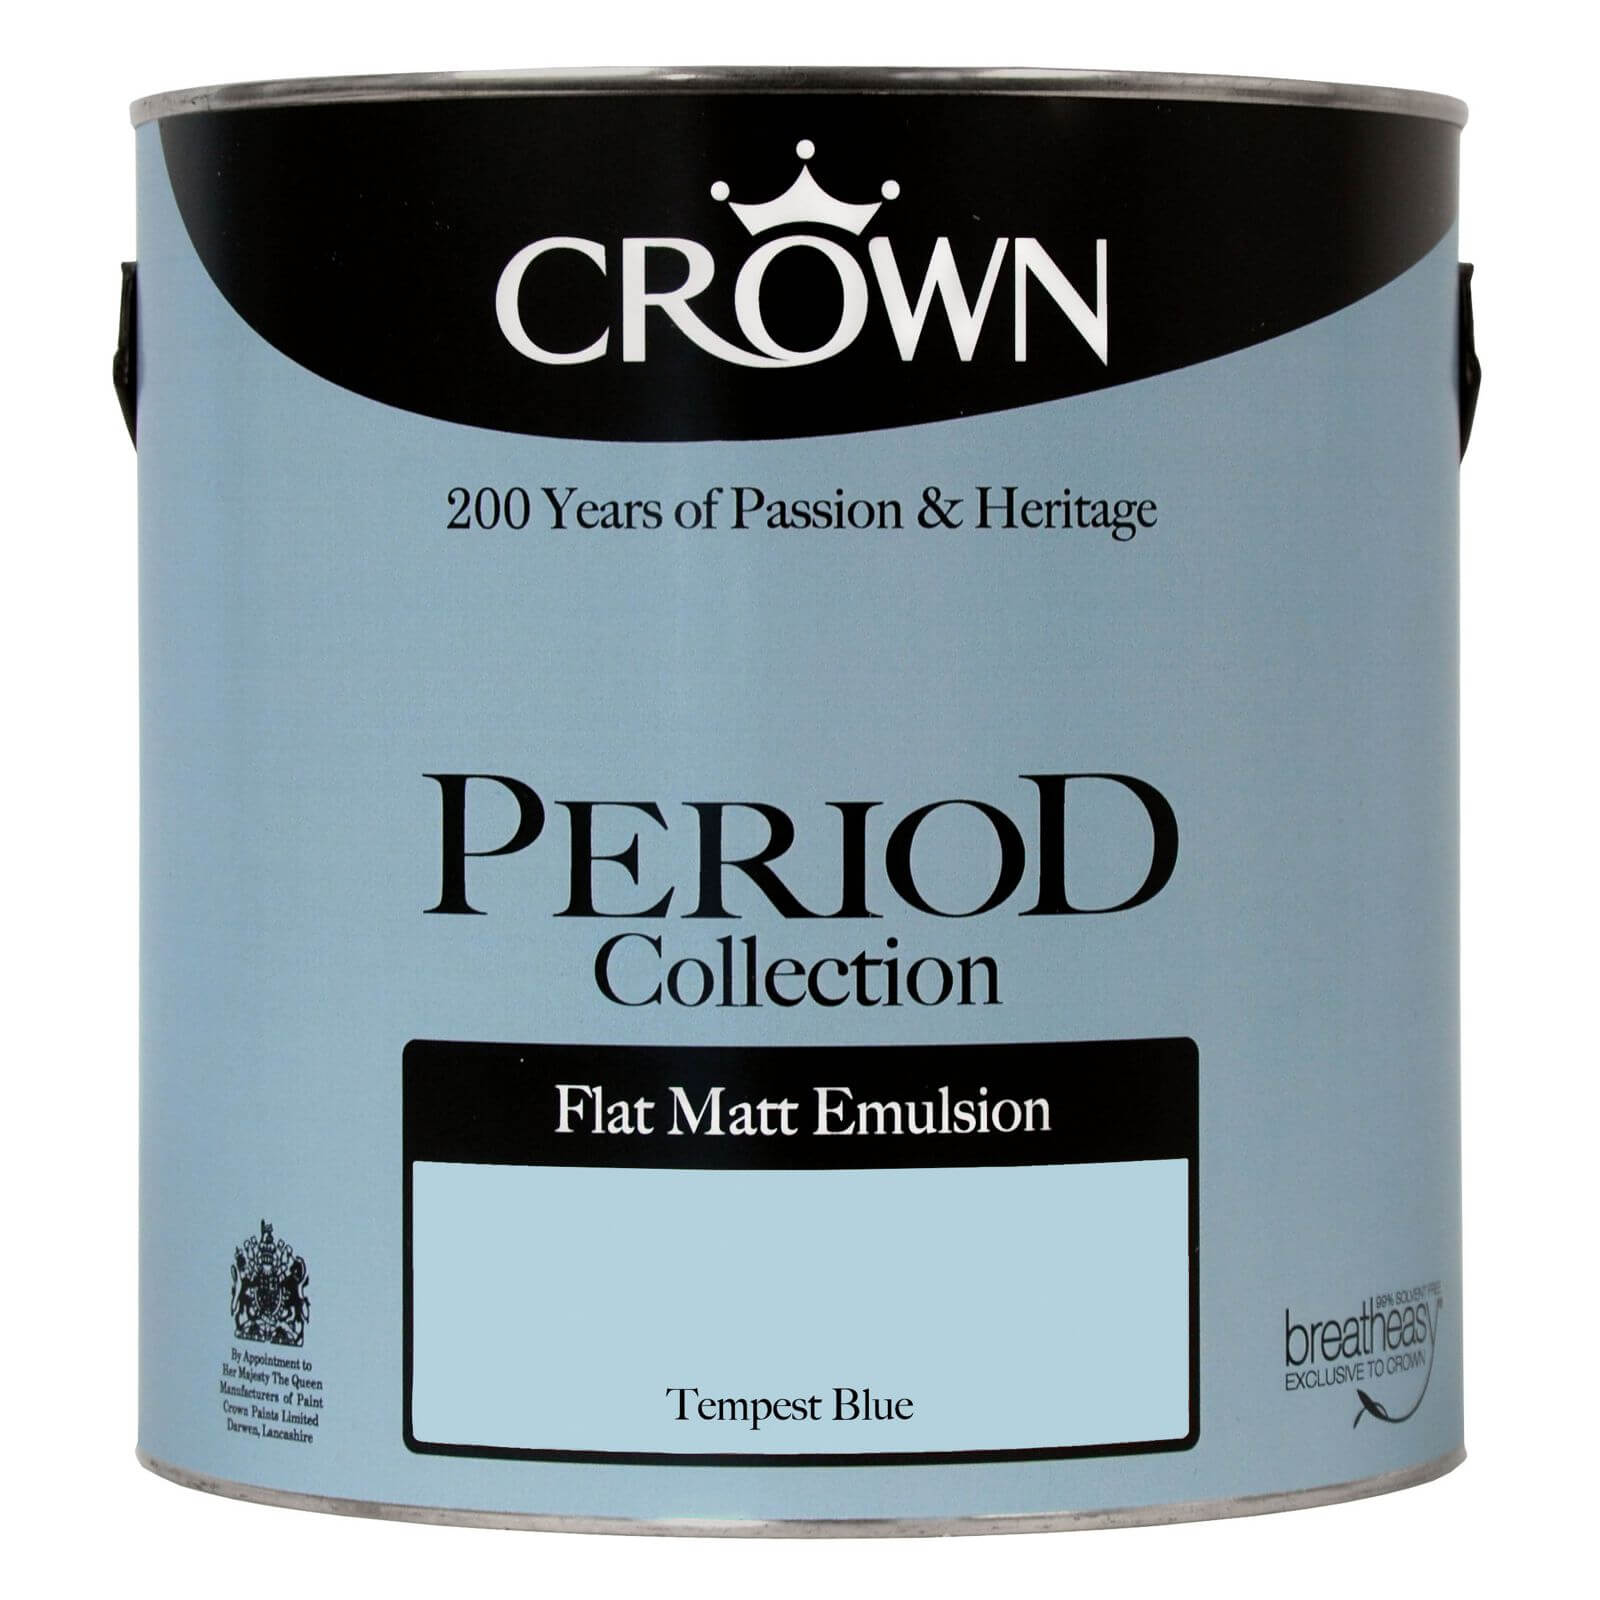 Crown Period Collection Tempest Blue - Flat Matt Emulsion Paint - 2.5L